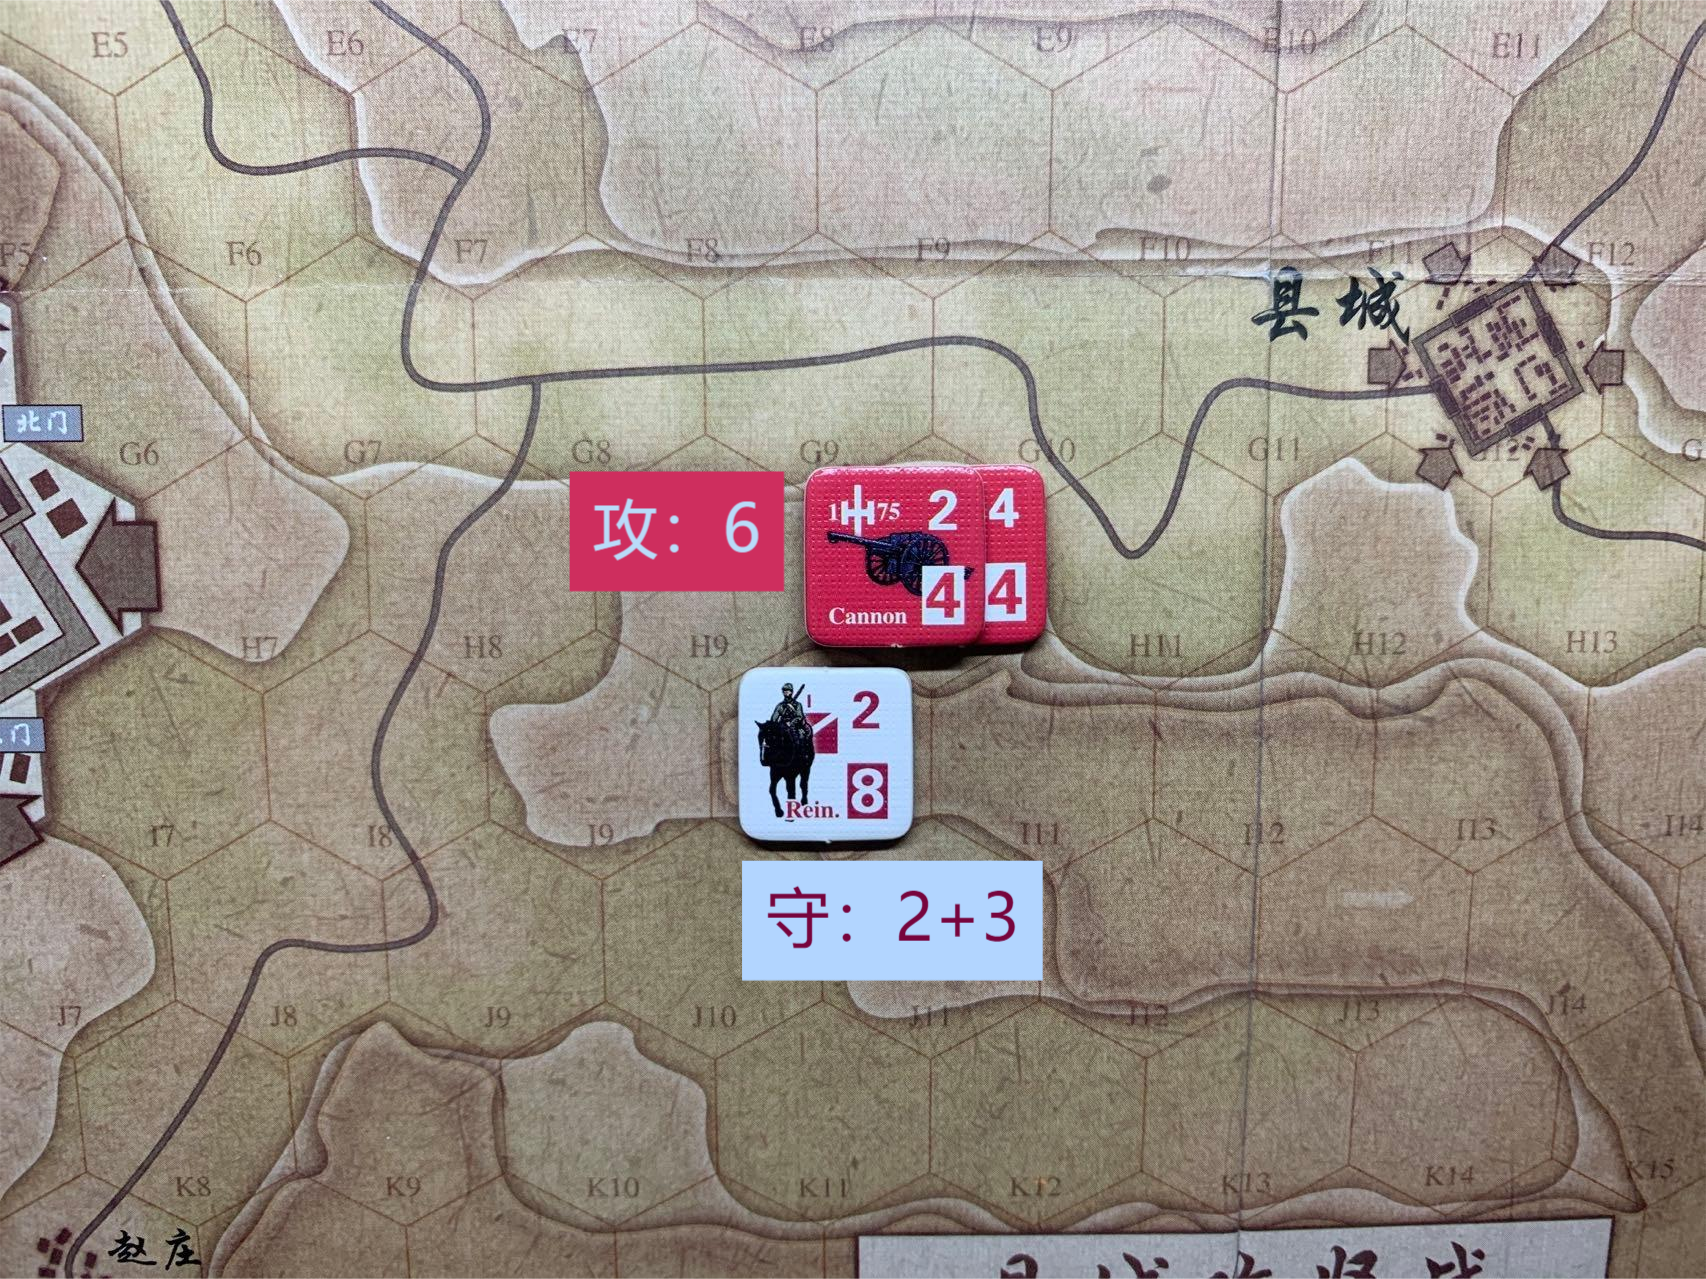 举个例子，假设现在为中方的战斗阶段，H10格中方2支独立团部队向日方1支增援部队所在的I9格发起进攻，双方战斗力根据地形修正后为6:5，战力差为+1，此时中方宣称使用火炮修正